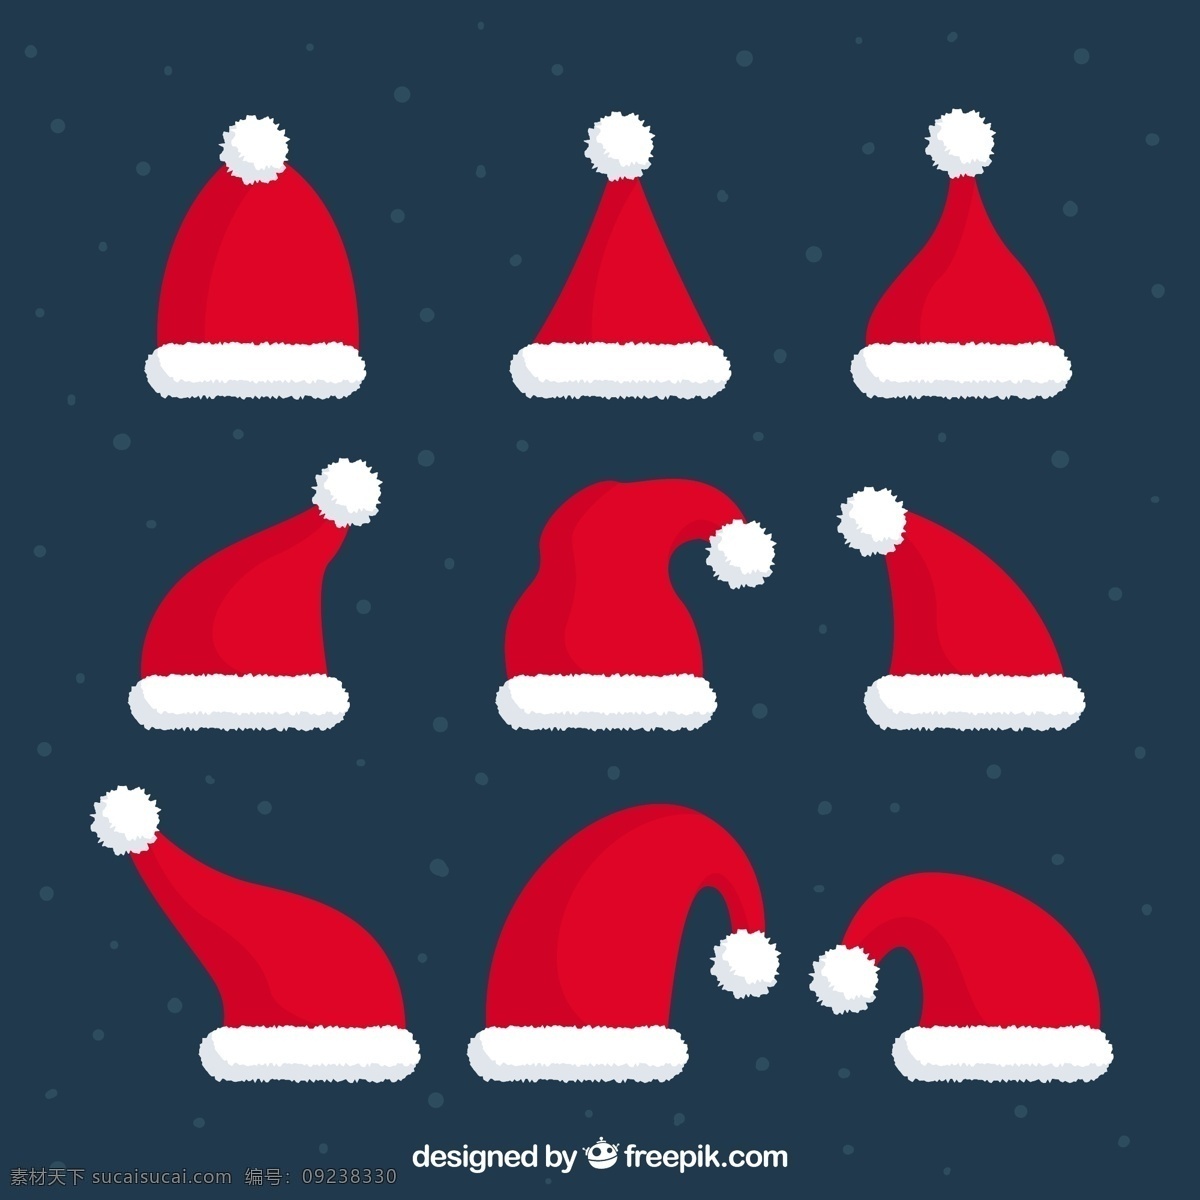 圣 克劳斯 帽 收藏 圣诞节 圣诞快乐 冬天快乐 圣诞老人 庆祝 帽子 节日 节日快乐 圣诞帽 季节 快乐 十二月 红色